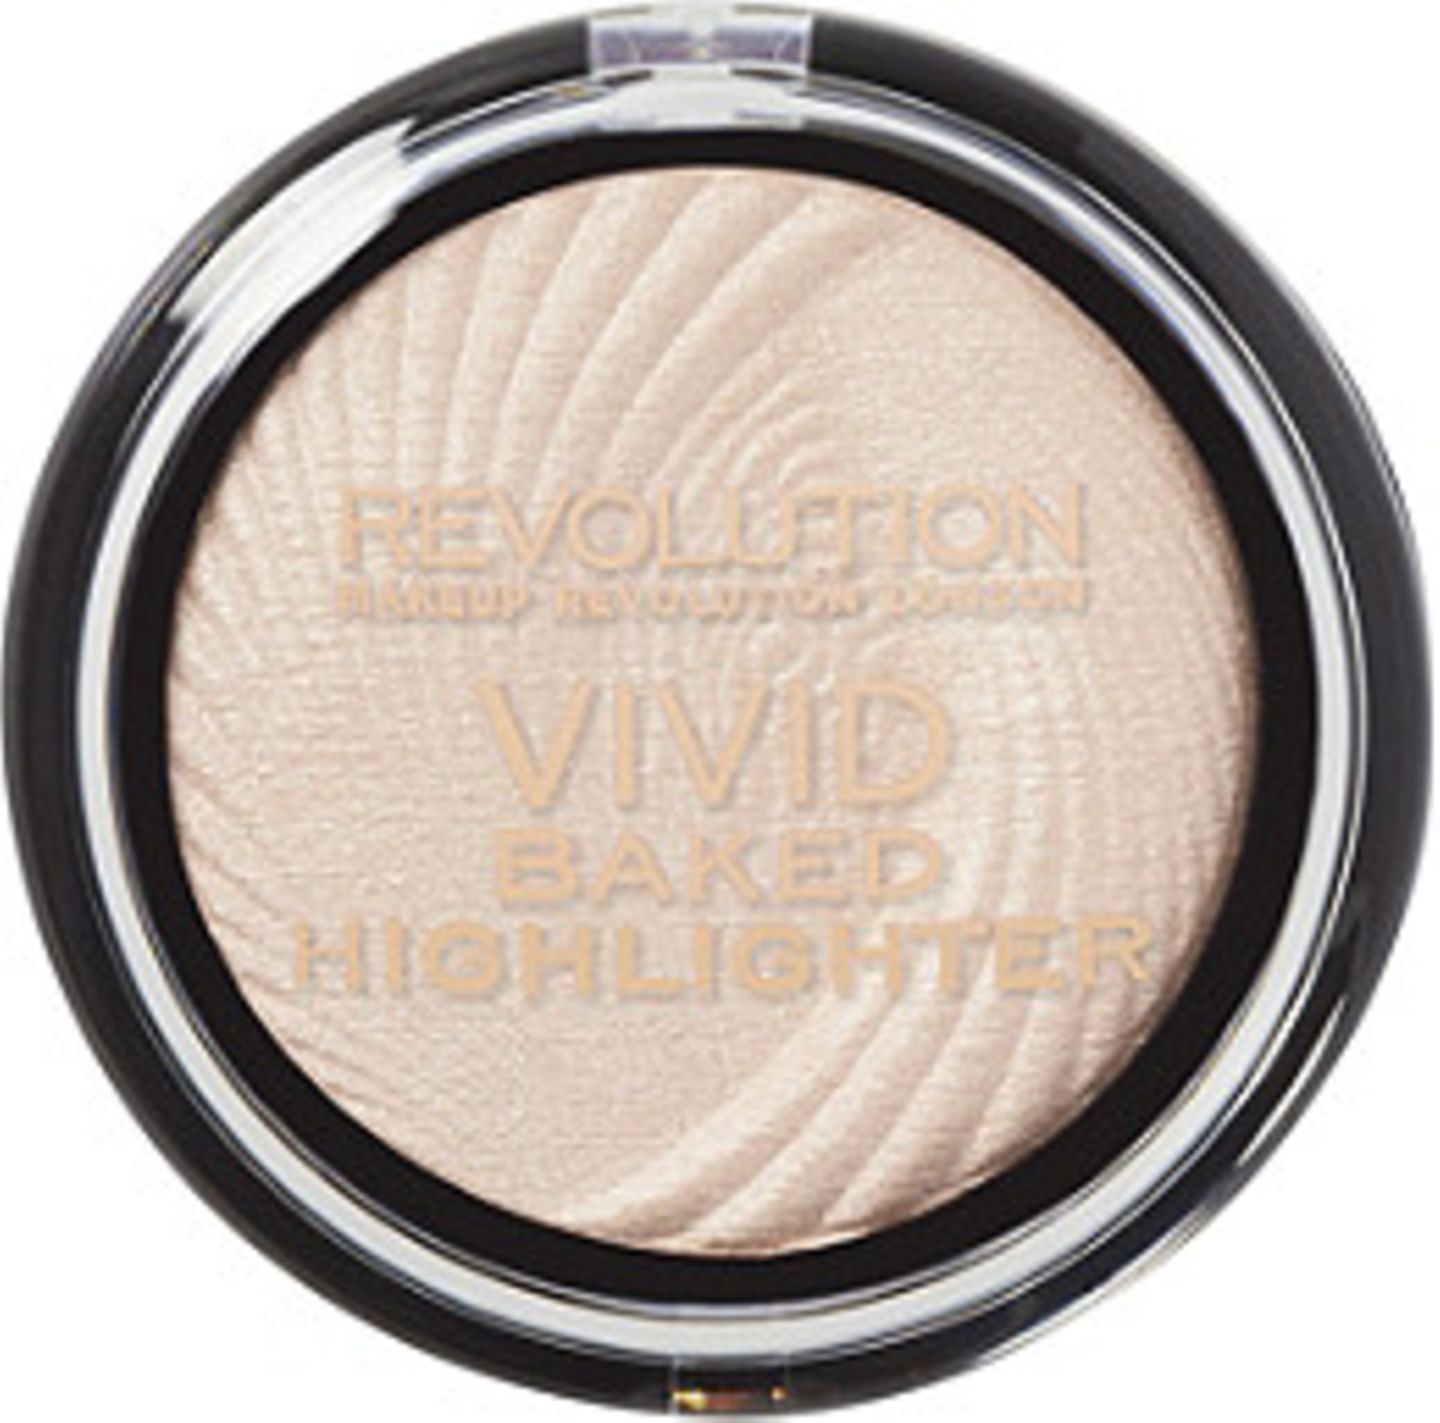 Makeup Revolution Vivid Baked Highlighter